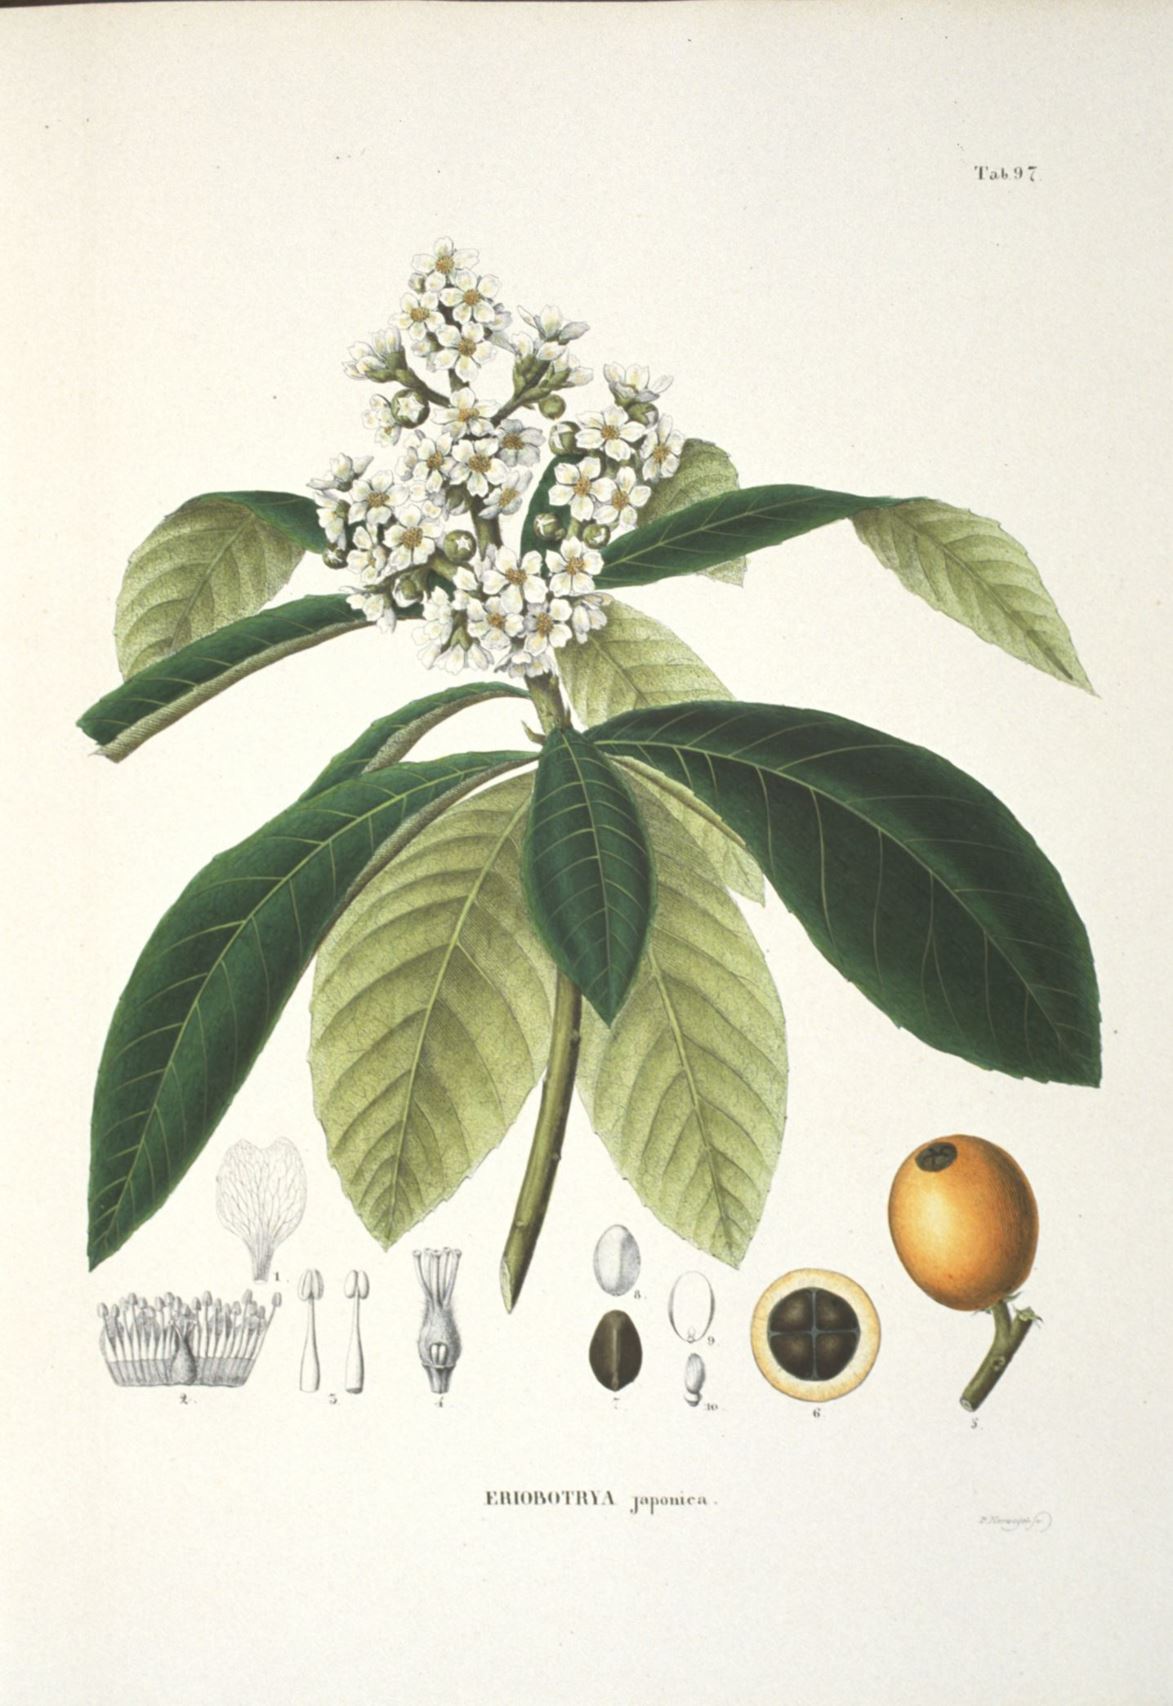 Eriobotrya japonica - Japanse mispel, Loquat, Japanese medlar, Japanese plum, Biwa, 枇杷 pi ba